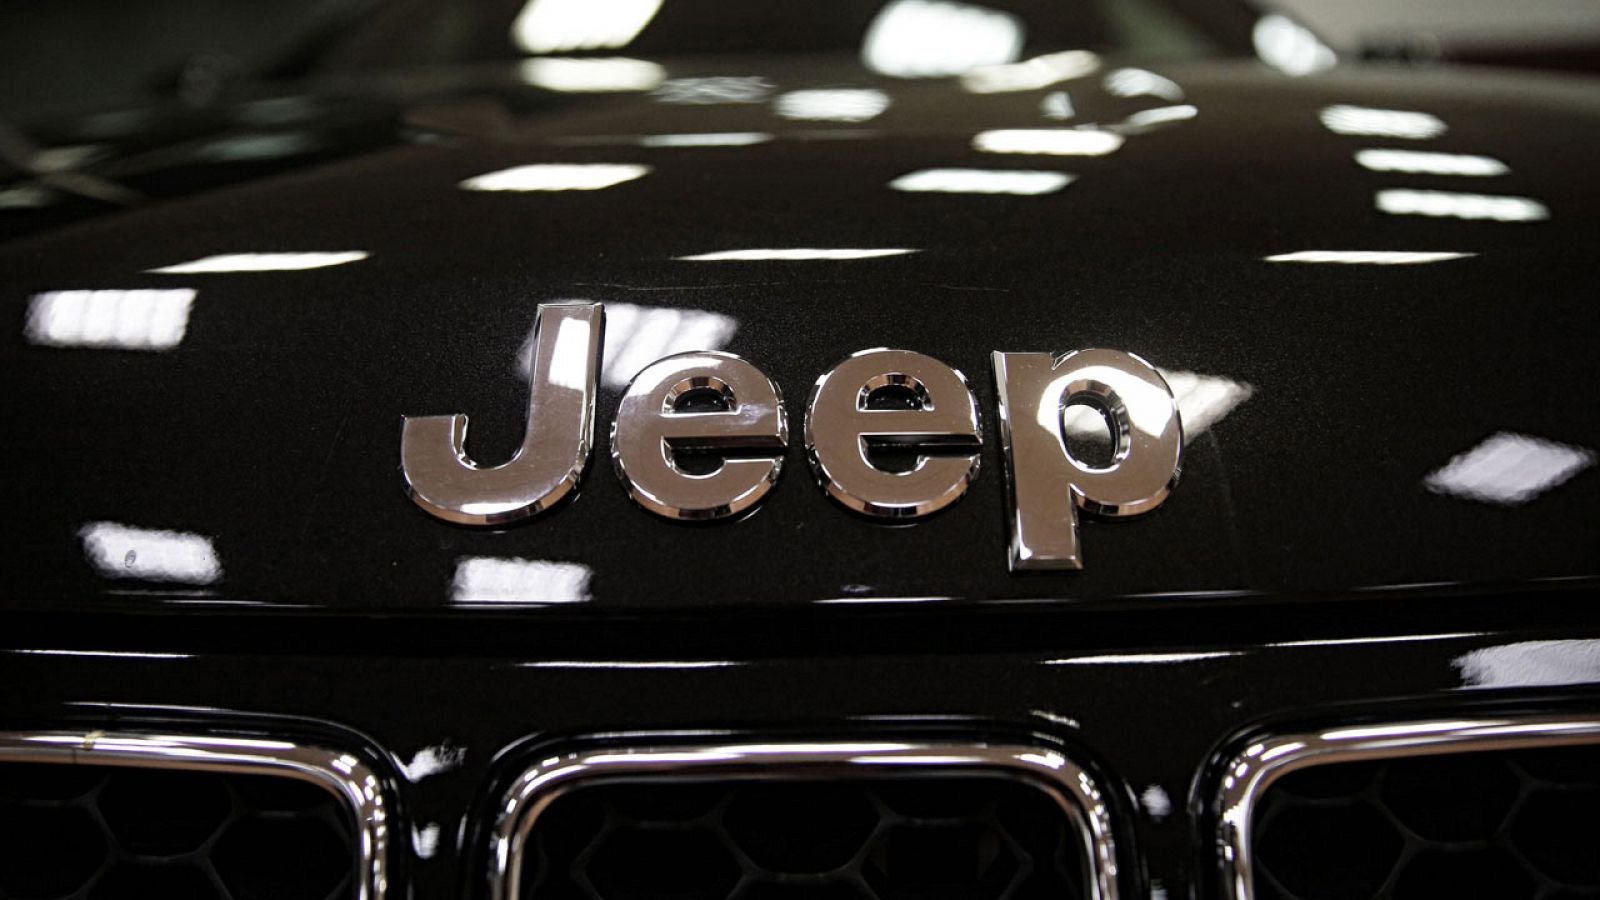 Uno de los modelos afectados es el todoterreno Jeep Grand Cherokee